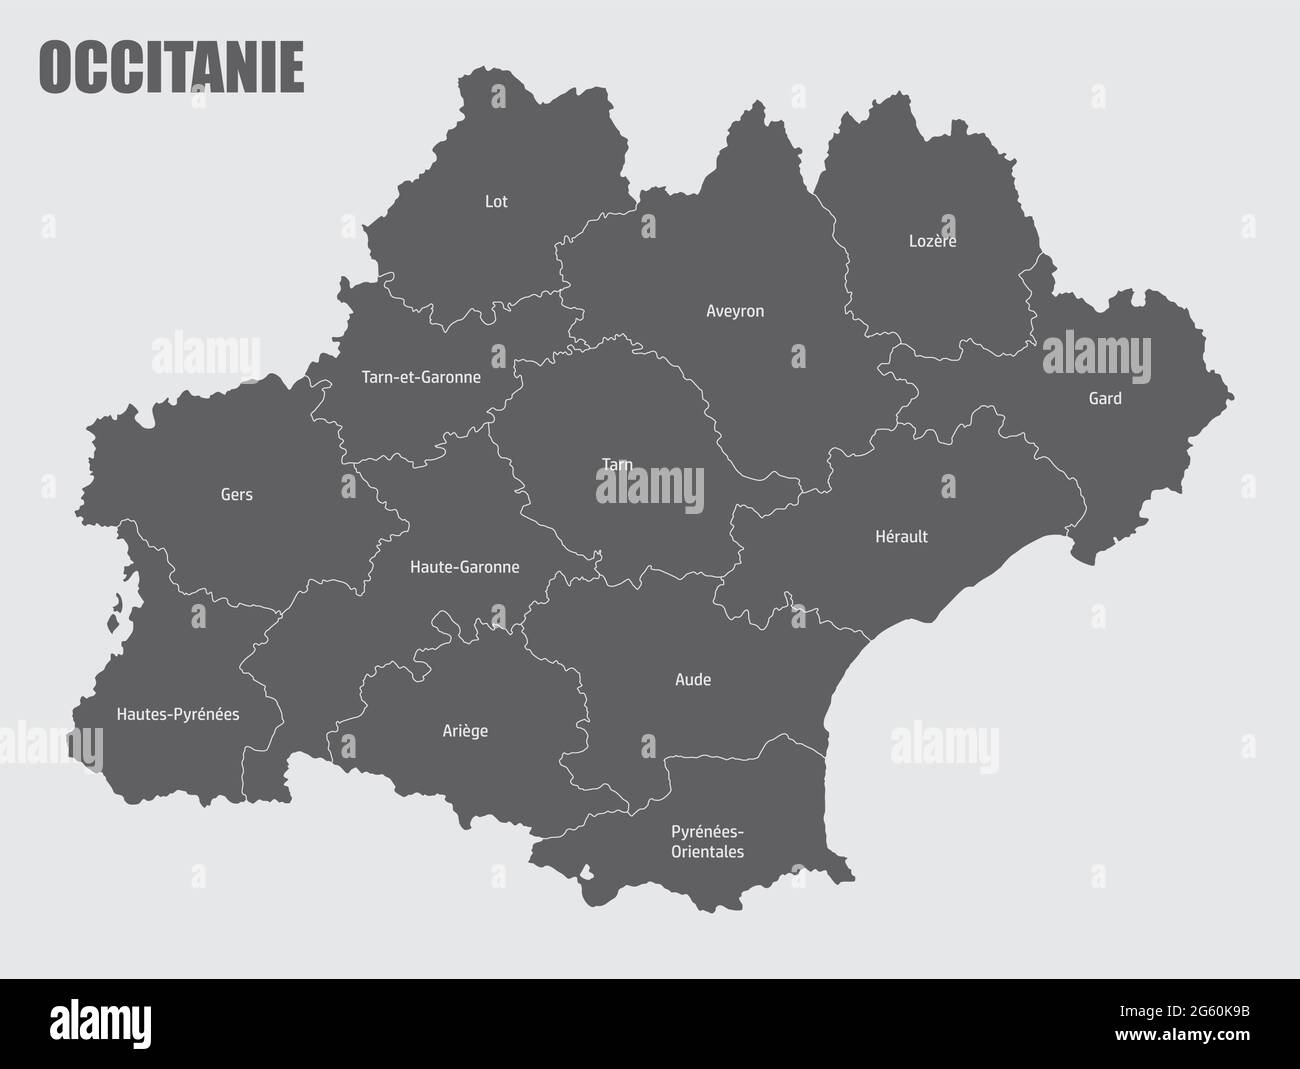 Carte administrative Occitanie divisée en départements avec labels, France Illustration de Vecteur